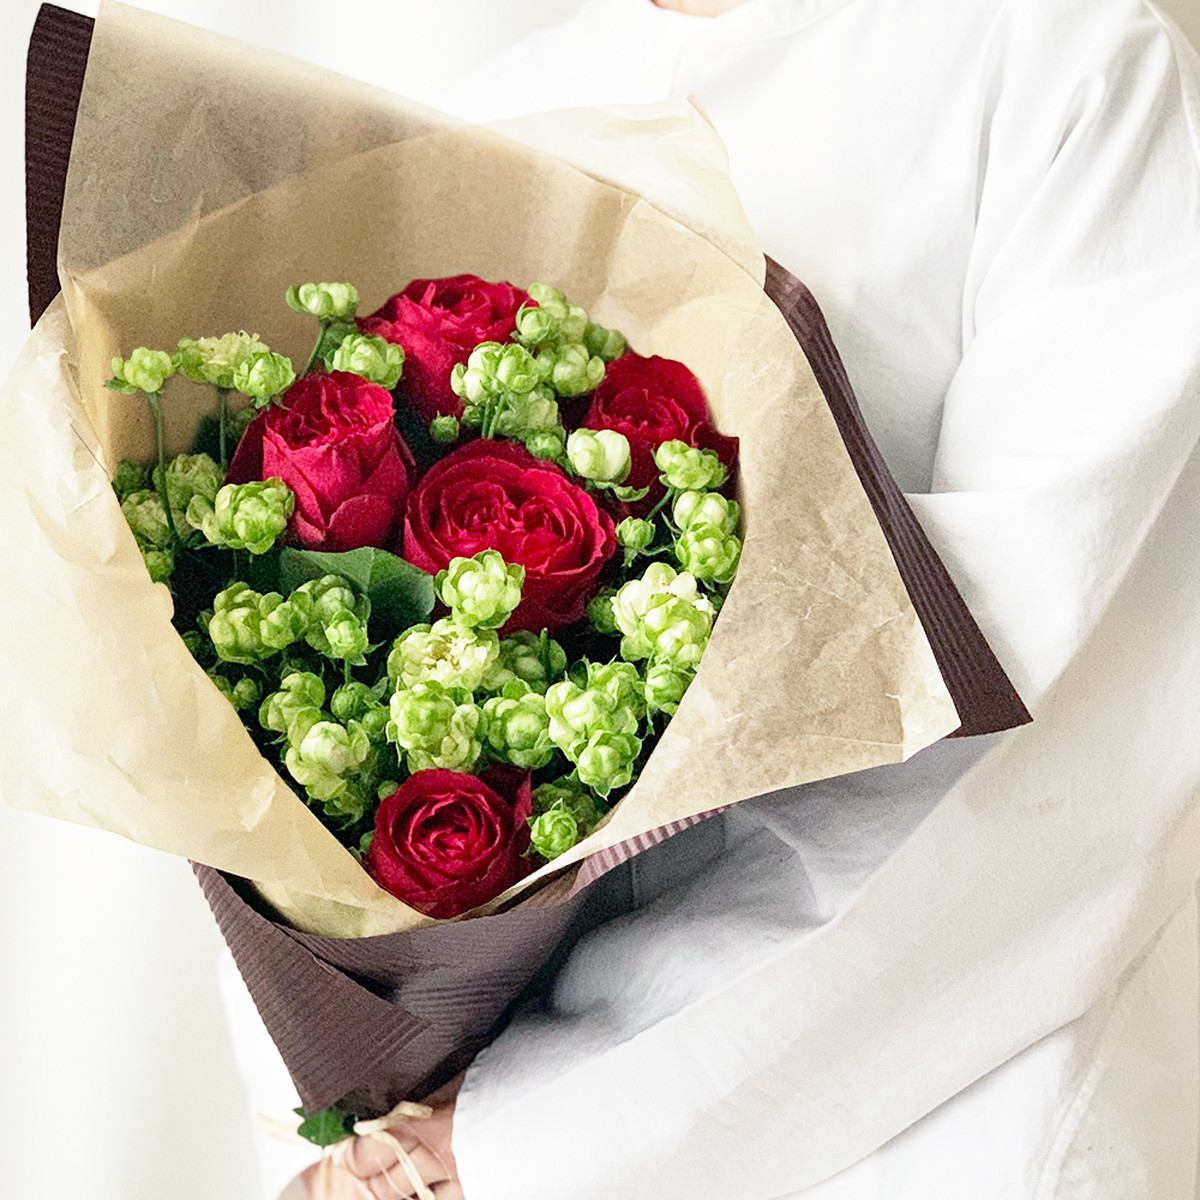 ローズブーケ レッドエレガンス エクレール よいはな Yoihana 最高品質のお花をお届けするネット通販